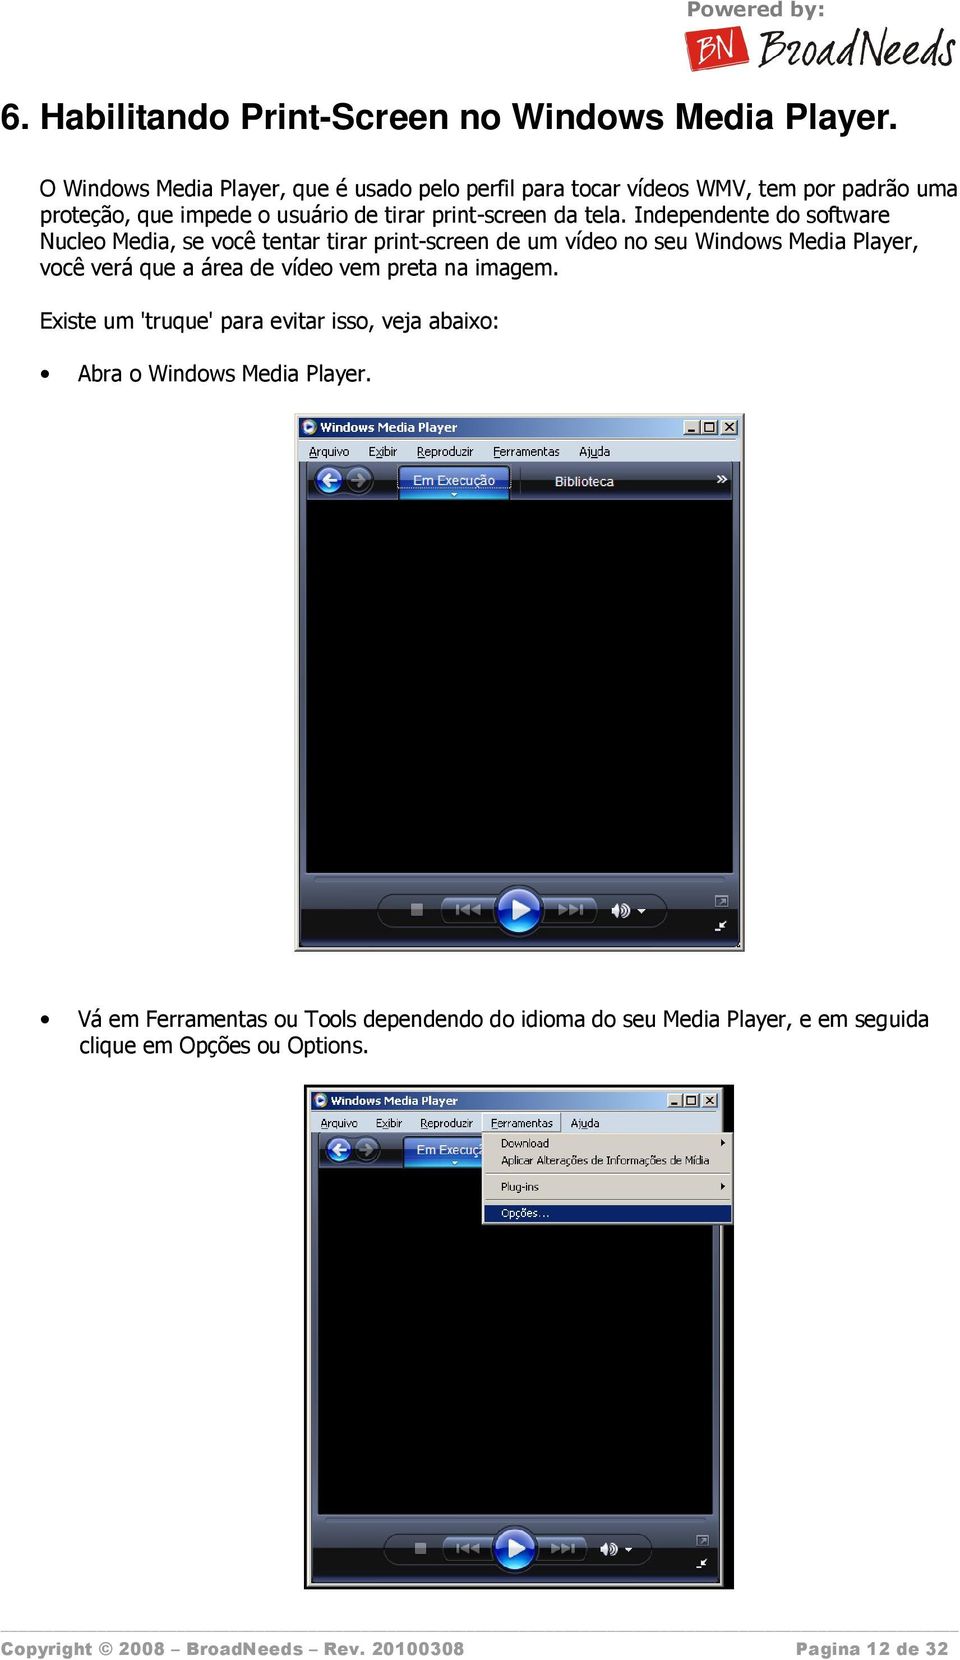 Independente do software Nucleo Media, se você tentar tirar print-screen de um vídeo no seu Windows Media Player, você verá que a área de vídeo vem preta